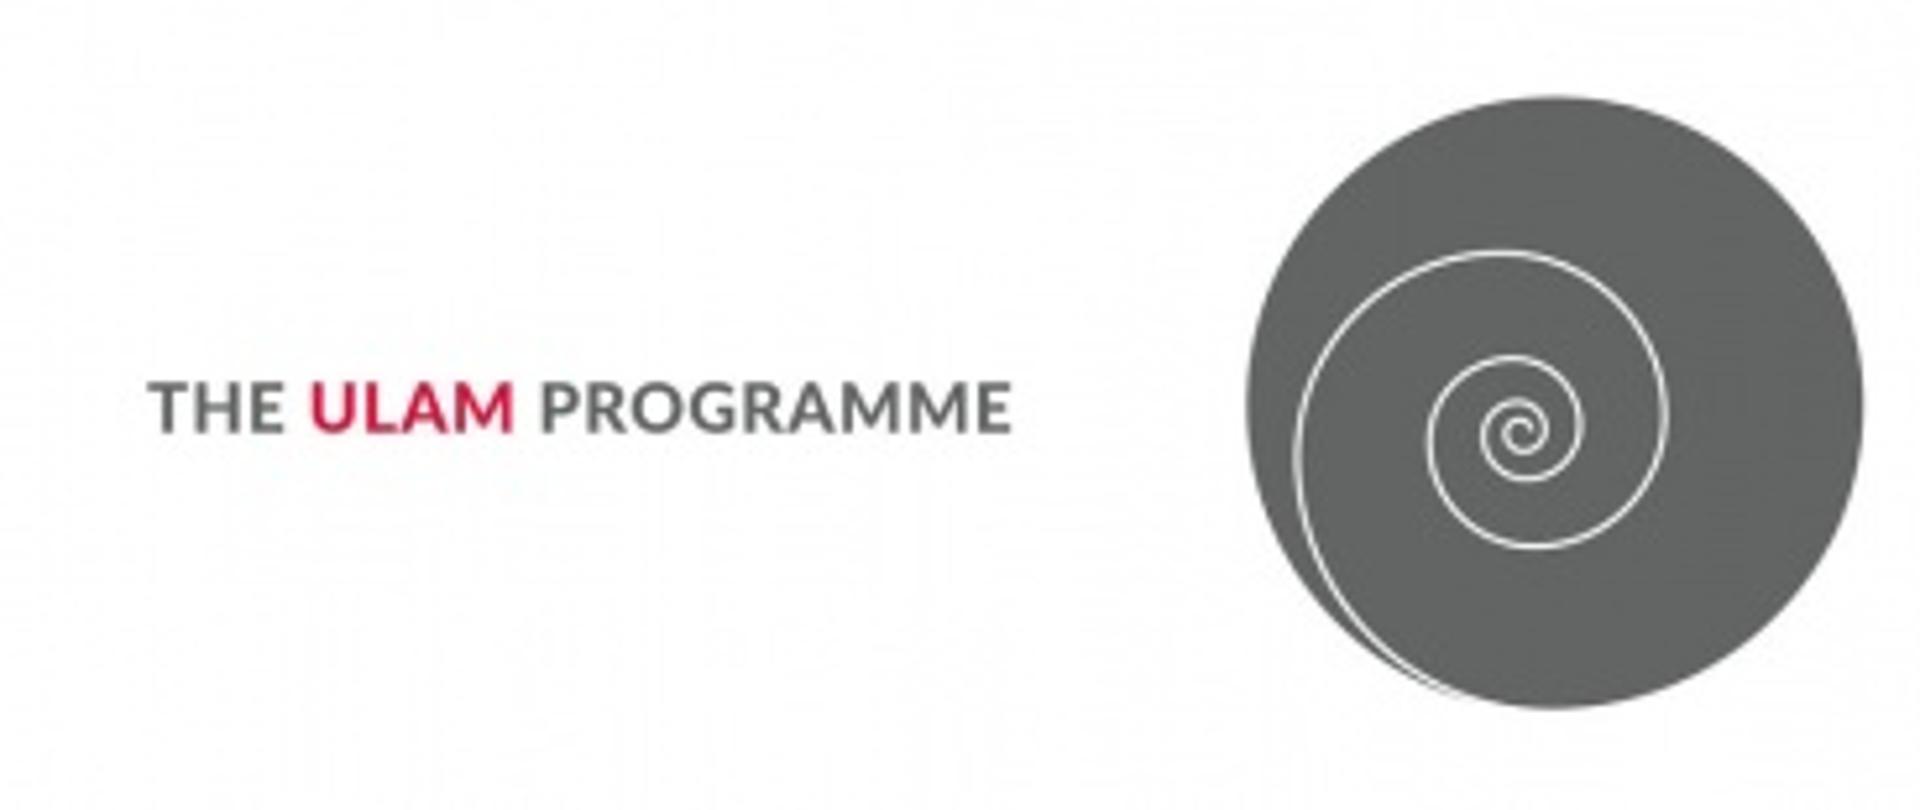 Stanisław Ulam Program logo